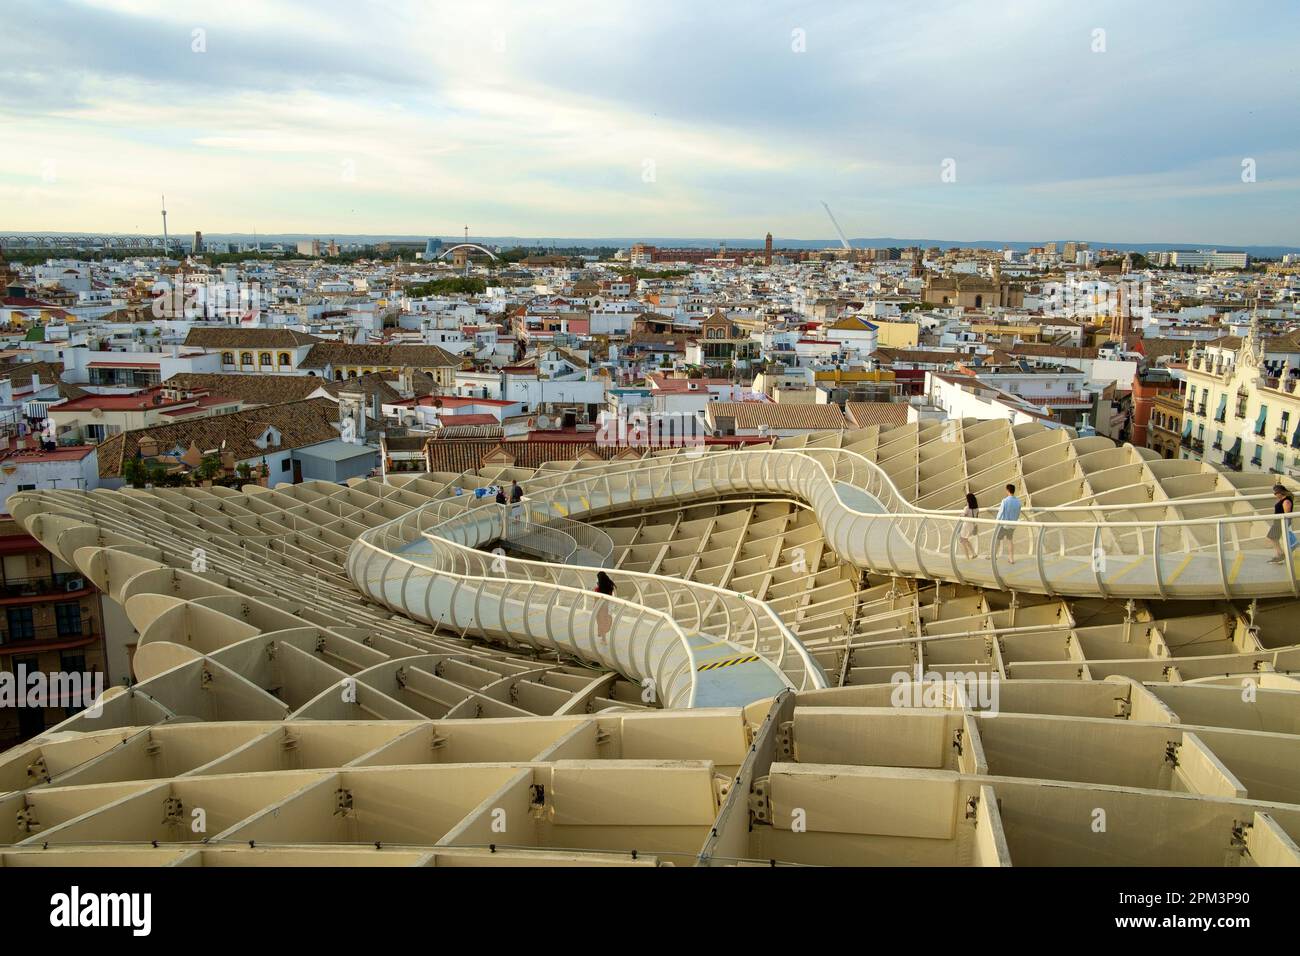 Seville Espagne - Setas de Sevilla ou Metropol parasol également connu sous le nom de 'les champignonss'. Il est revendiqué comme la plus grande structure en bois du monde. Banque D'Images